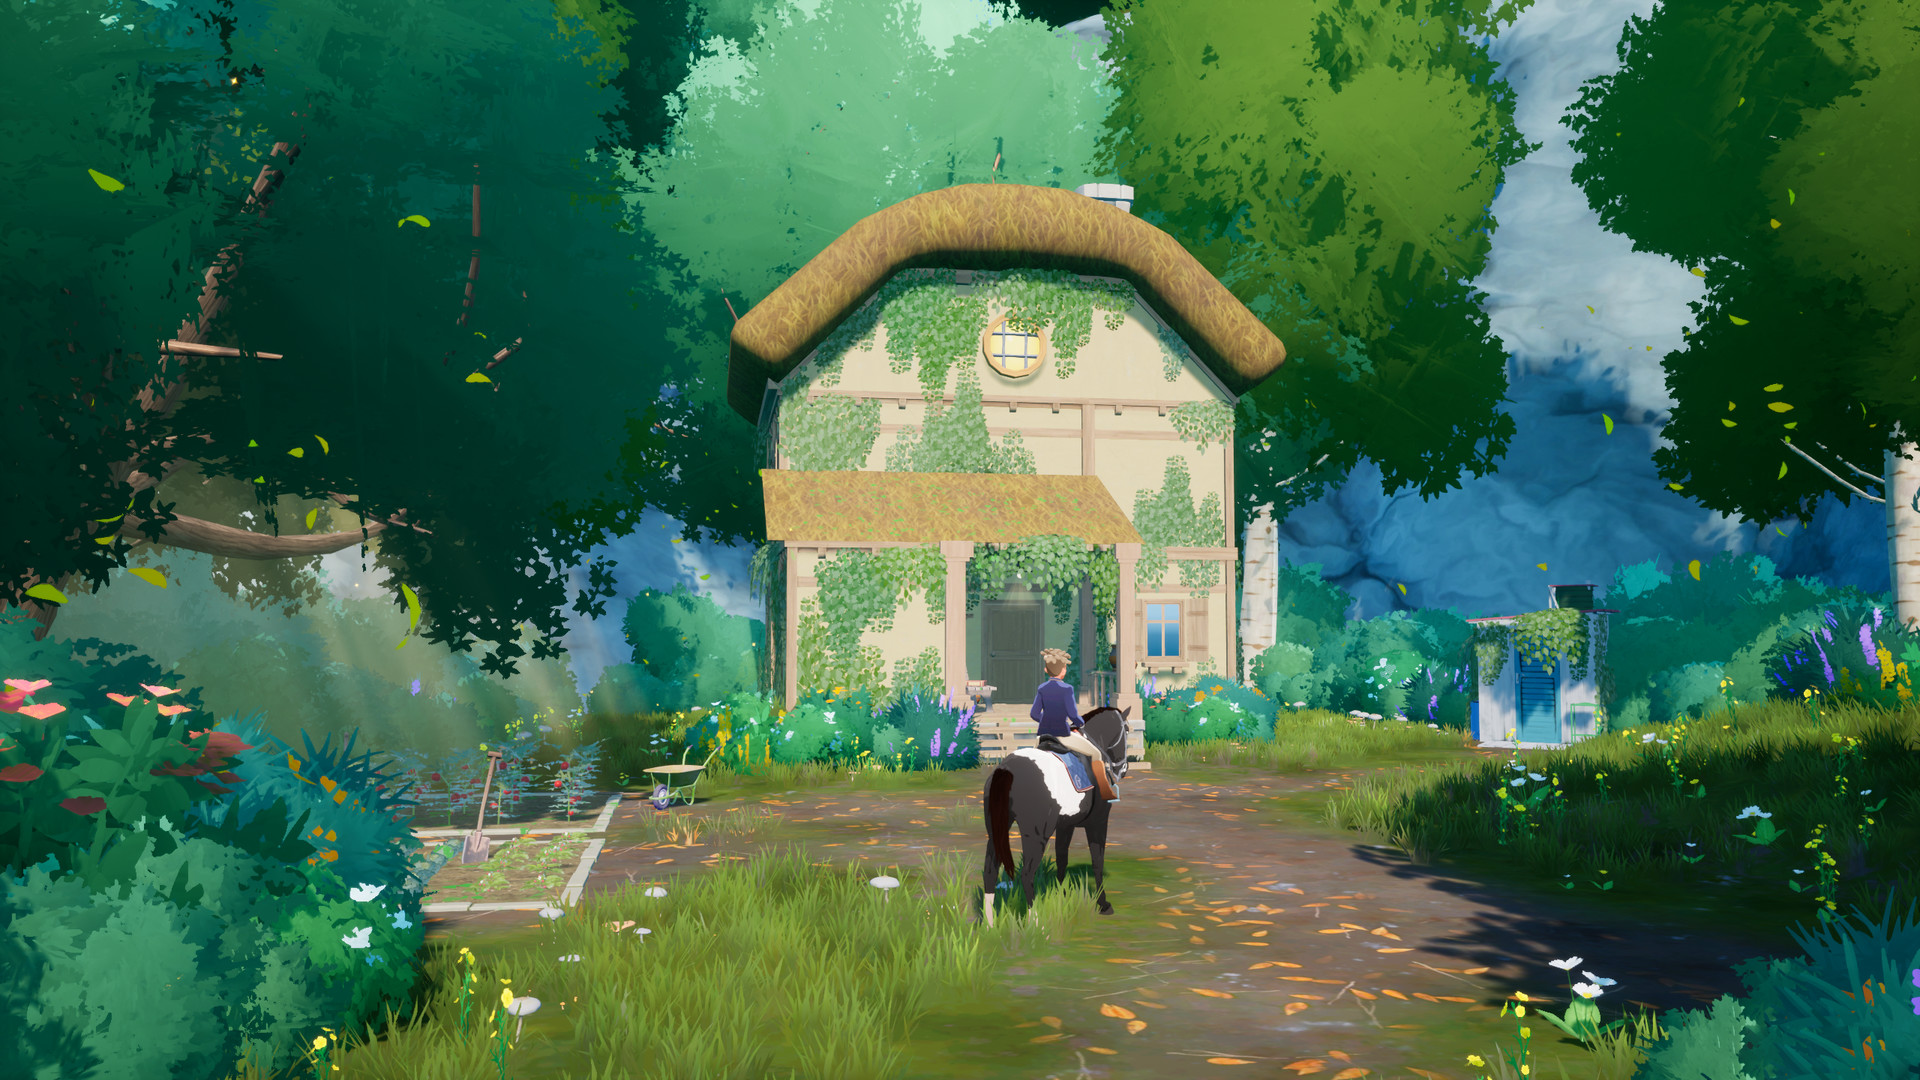 Horse Tales: Emerald Valley Ranch - Limited Digital Bonus DLC EU PS4 CD Key